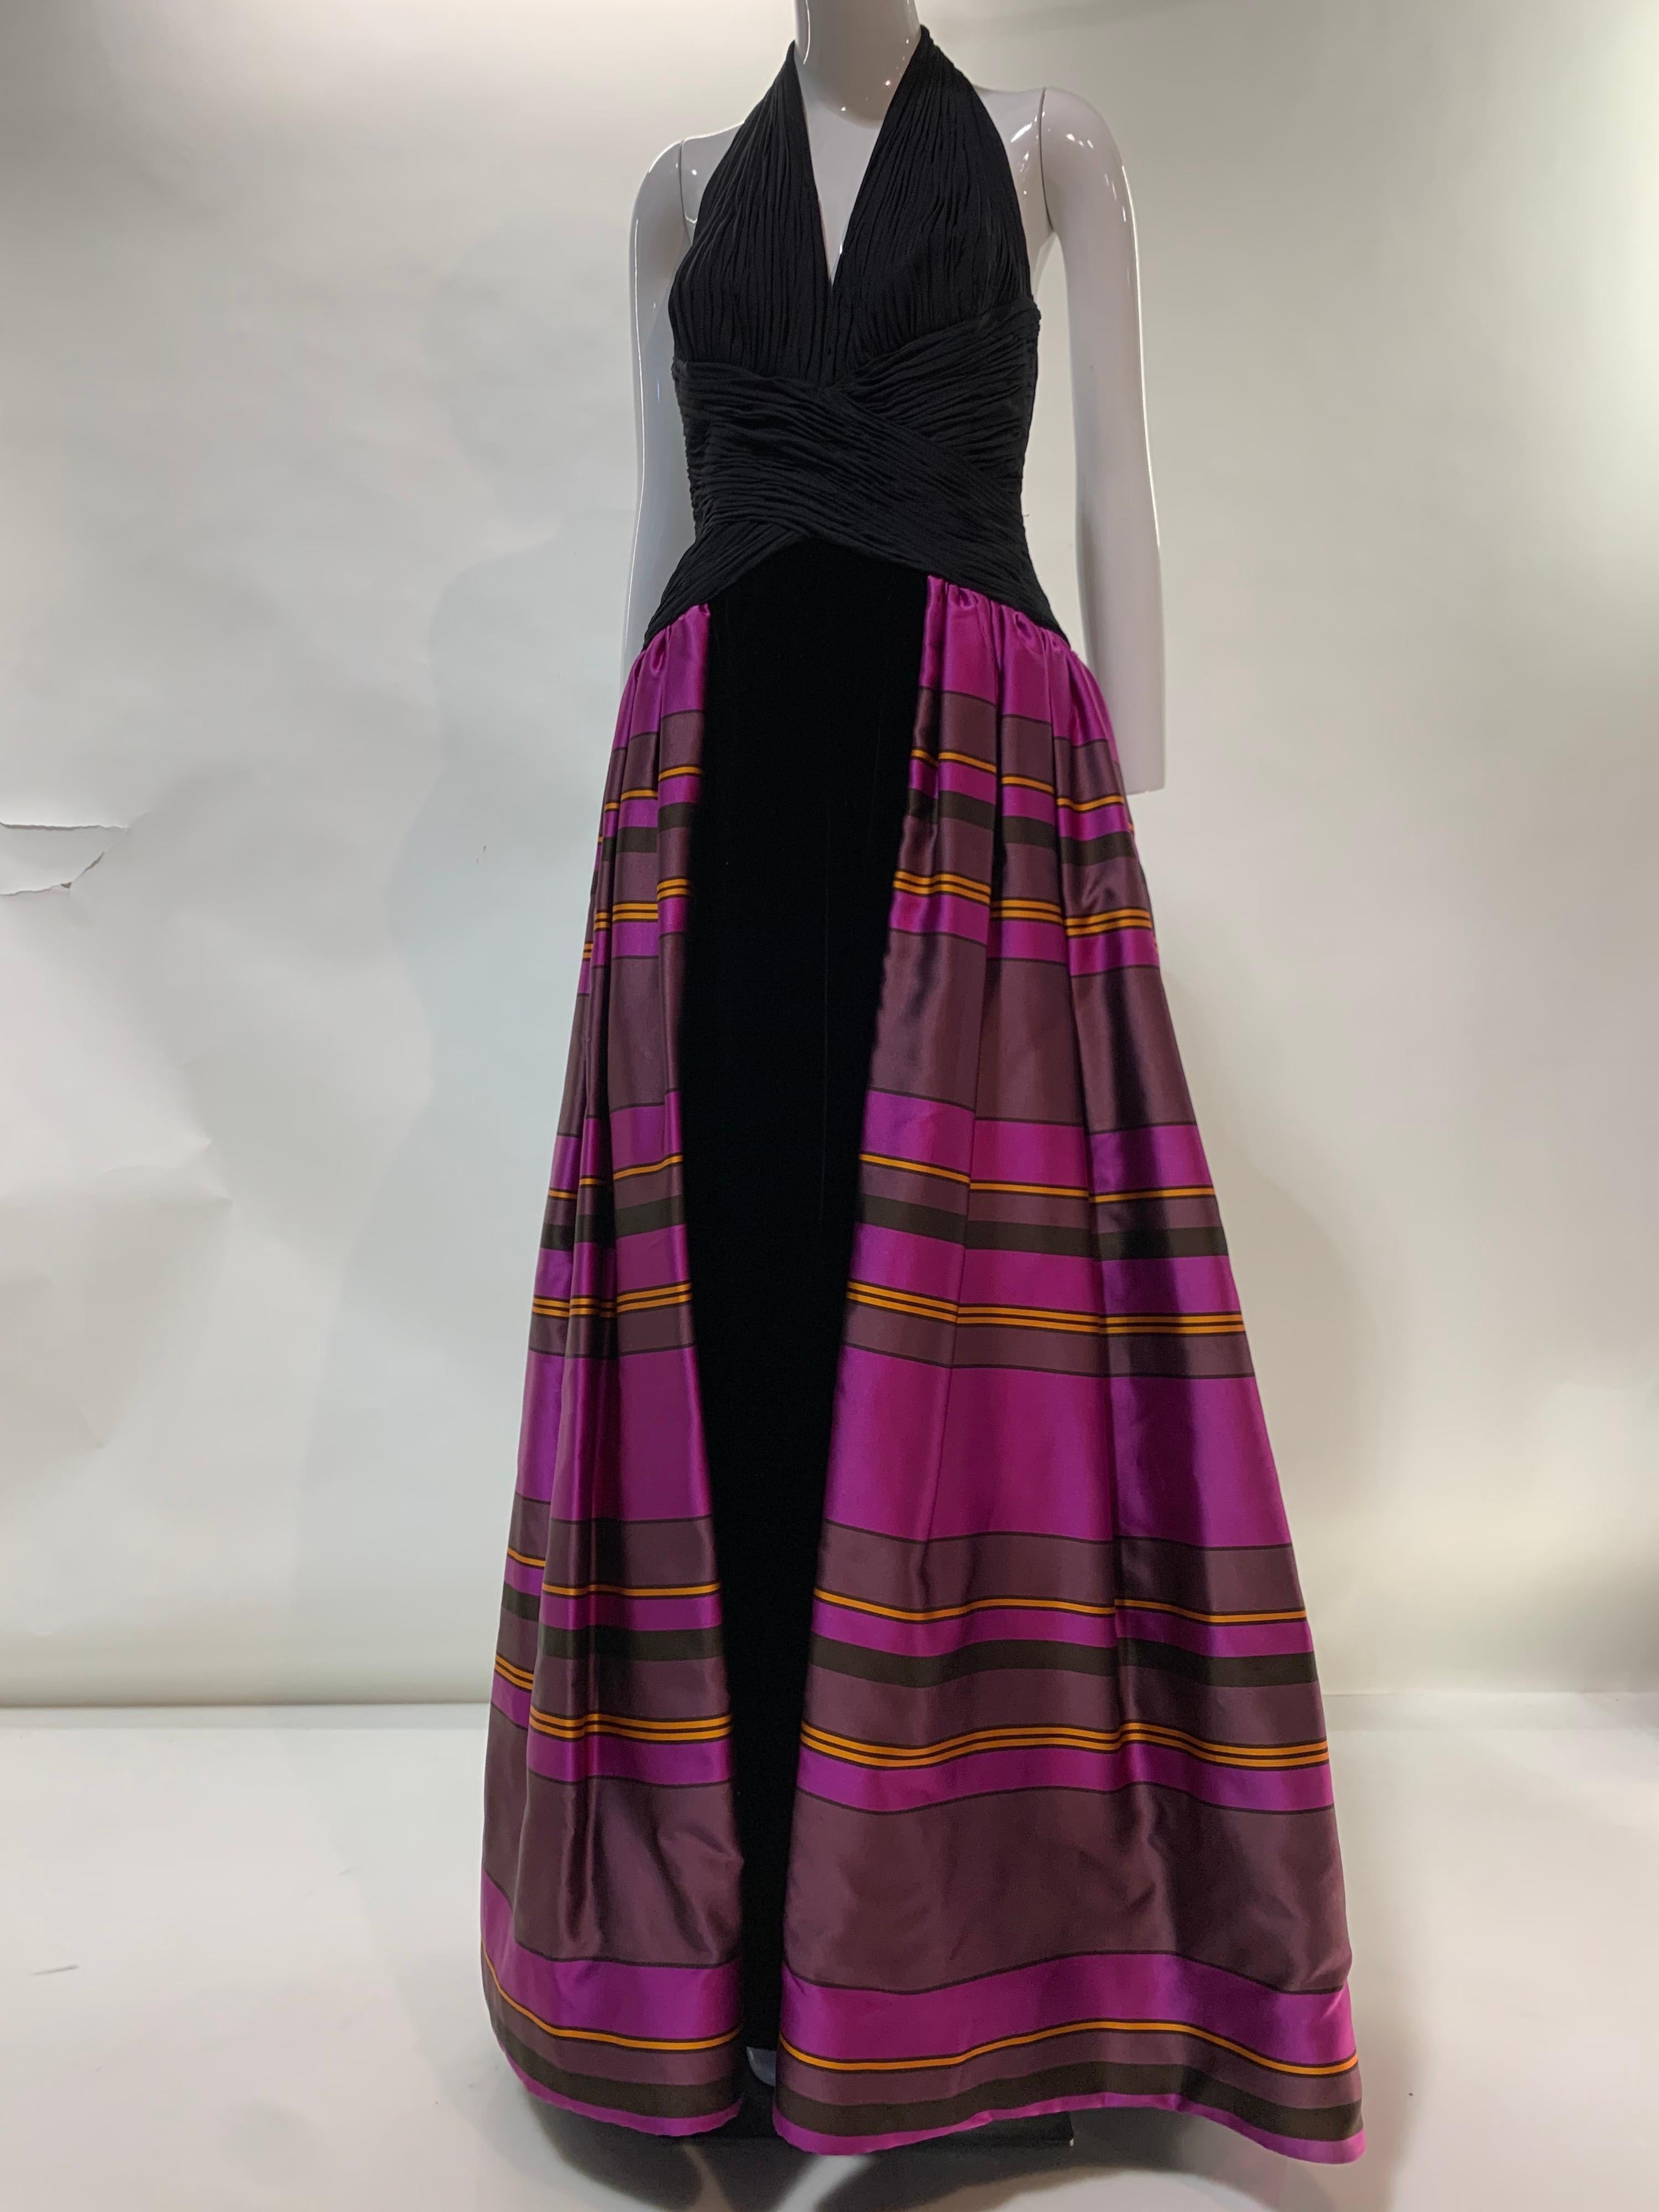 couture-Kleid der 1990er Jahre mit tiefem Rückenausschnitt, gerüschtem Mieder aus schwarzem Seidenjersey und langem Rock aus Seidensamt. An den Seiten und der hinteren Hüfte ist ein geraffter, lebhaft fuchsiafarben gestreifter, doppellagiger